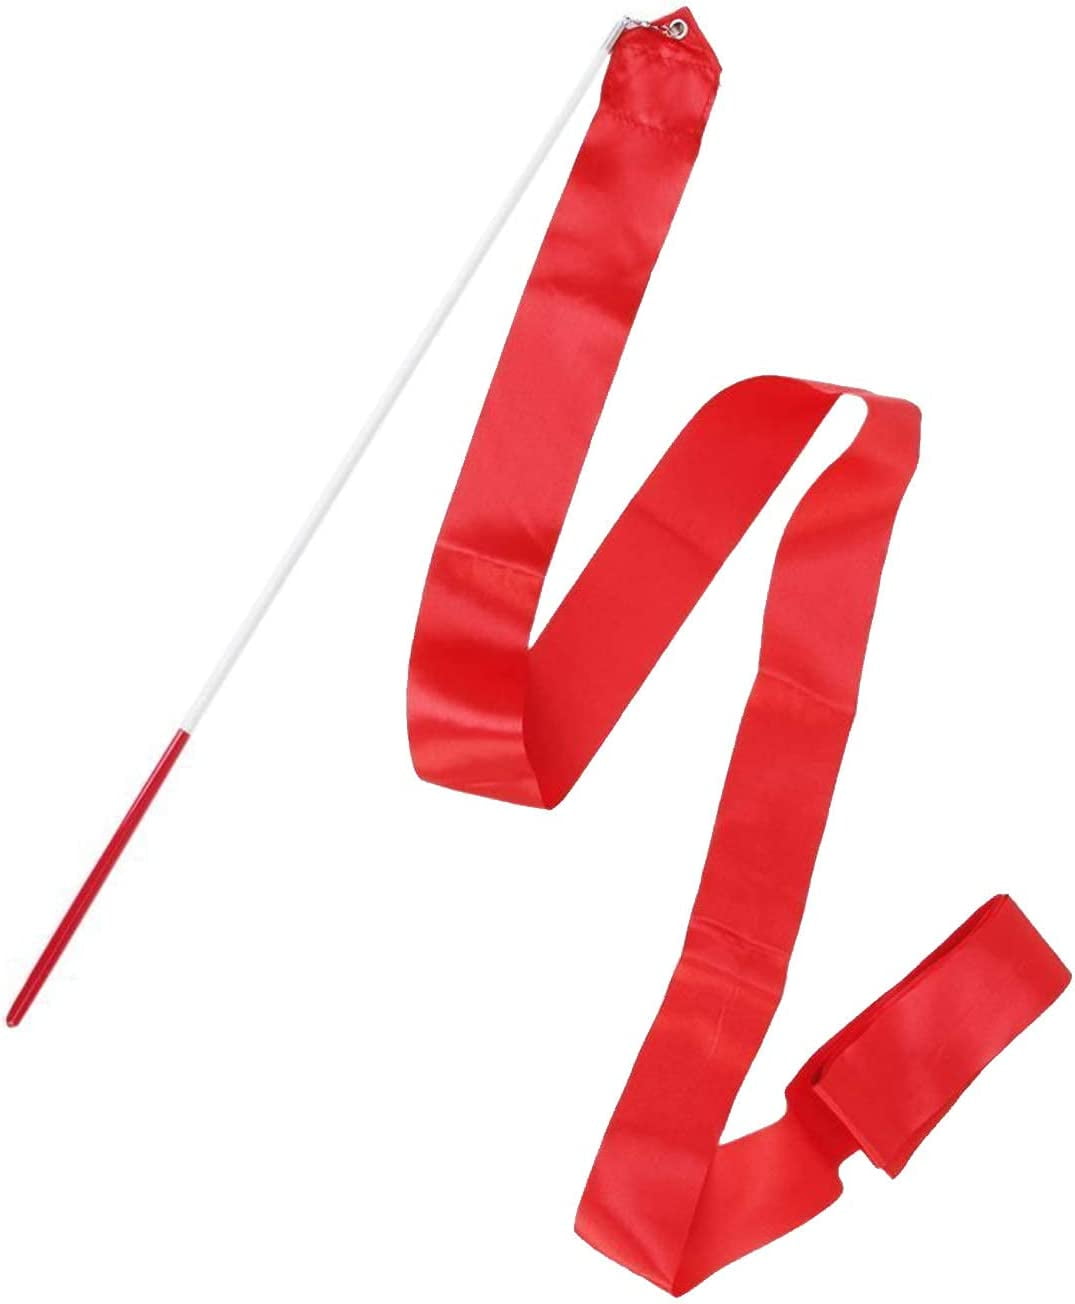 NOLITOY 6pcs Dancing Ribbon Gymnastics Wand Ribbon Sticks for Dance  Gymnastics Twirling Ribbon Rhythmic Ribbon Gymnastic Bars for Kids Ribbons  for